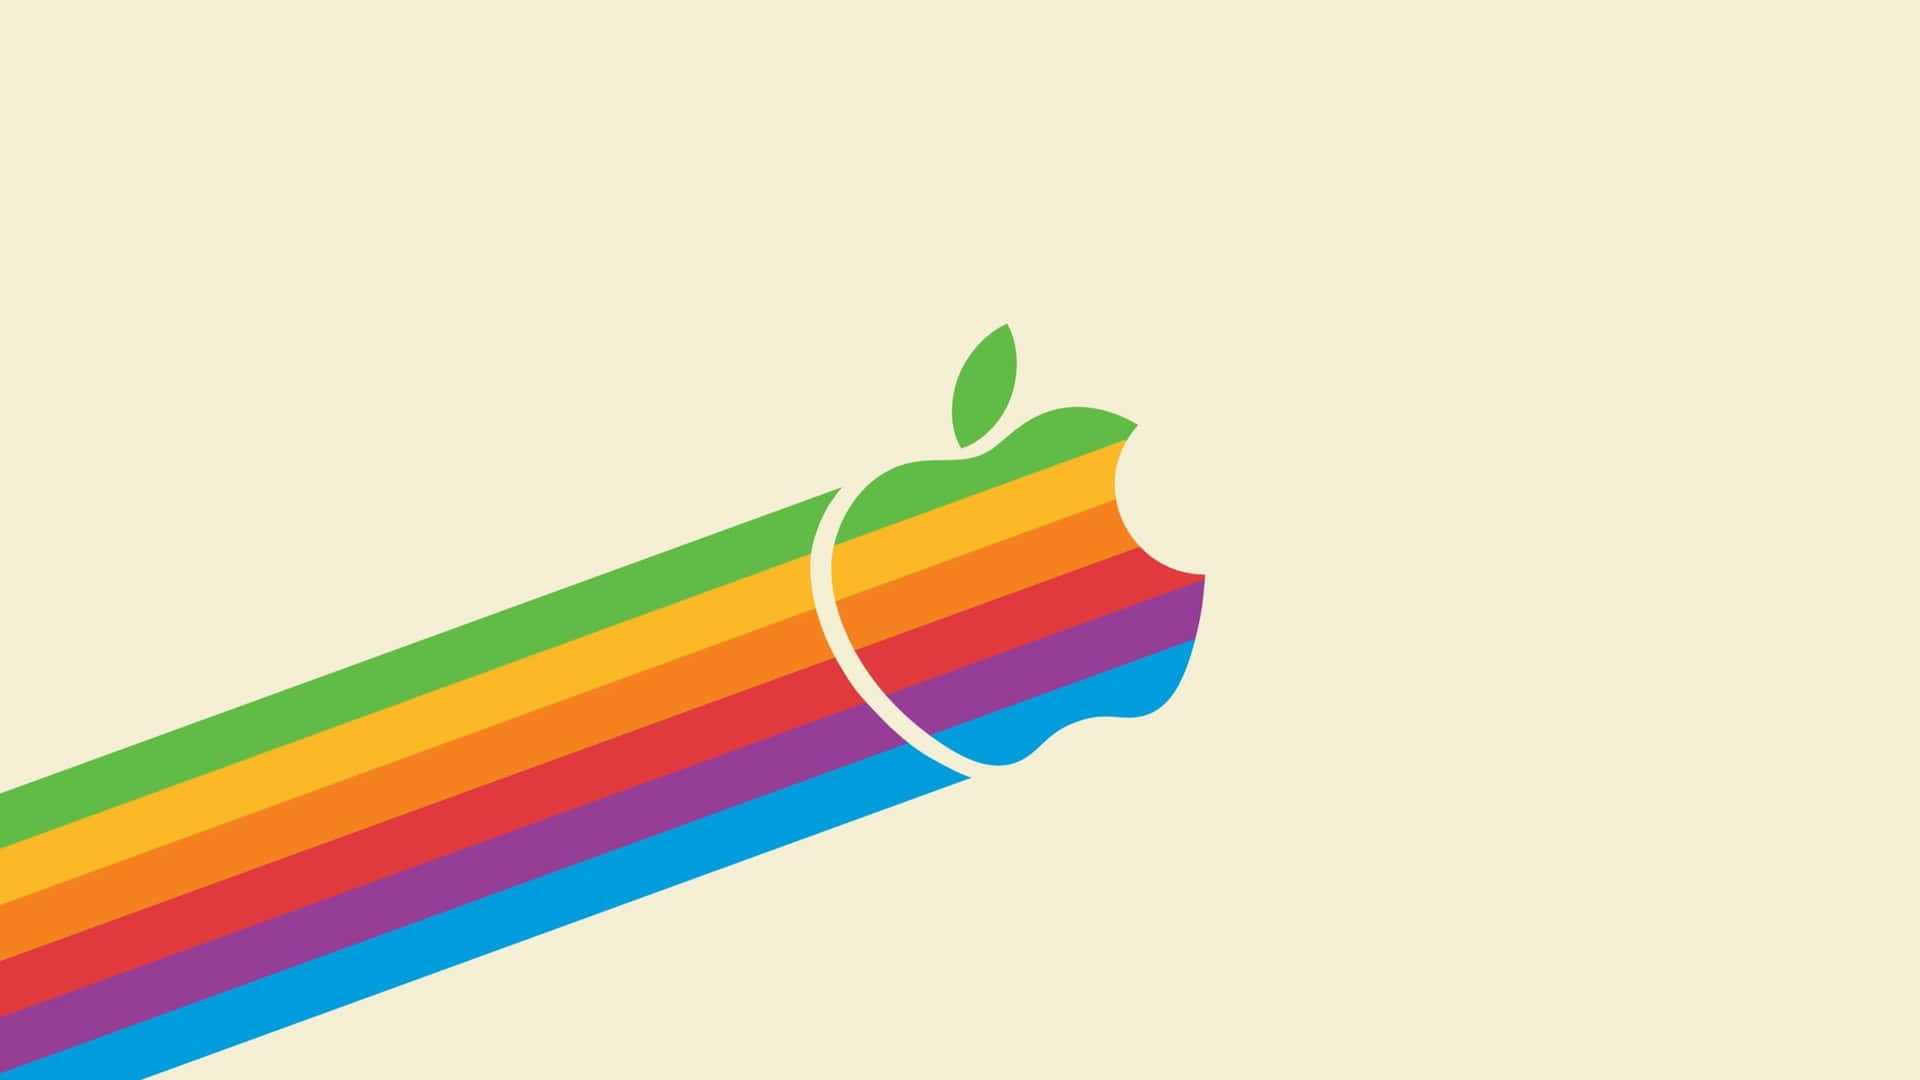 Fondosde Pantalla De Logotipo De Apple En Alta Definición. Fondo de pantalla